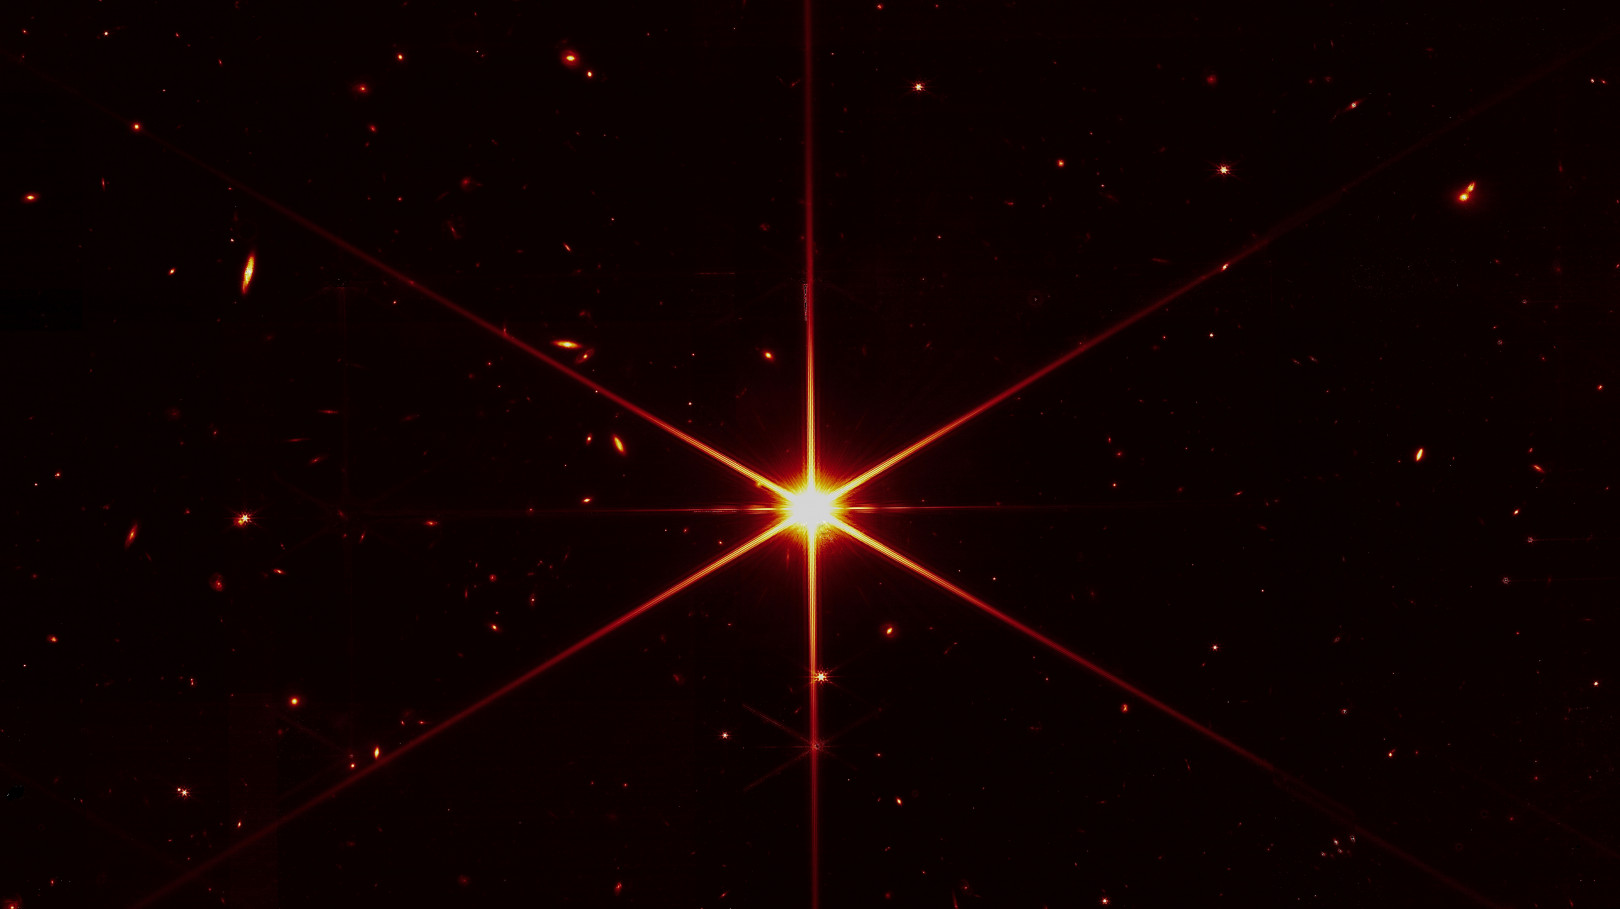 gwiazda 2MASS J17554042+6551277 zarejestrowana przez Kosmiczny Teleskop Jamesa Webba / NASA / STScl 